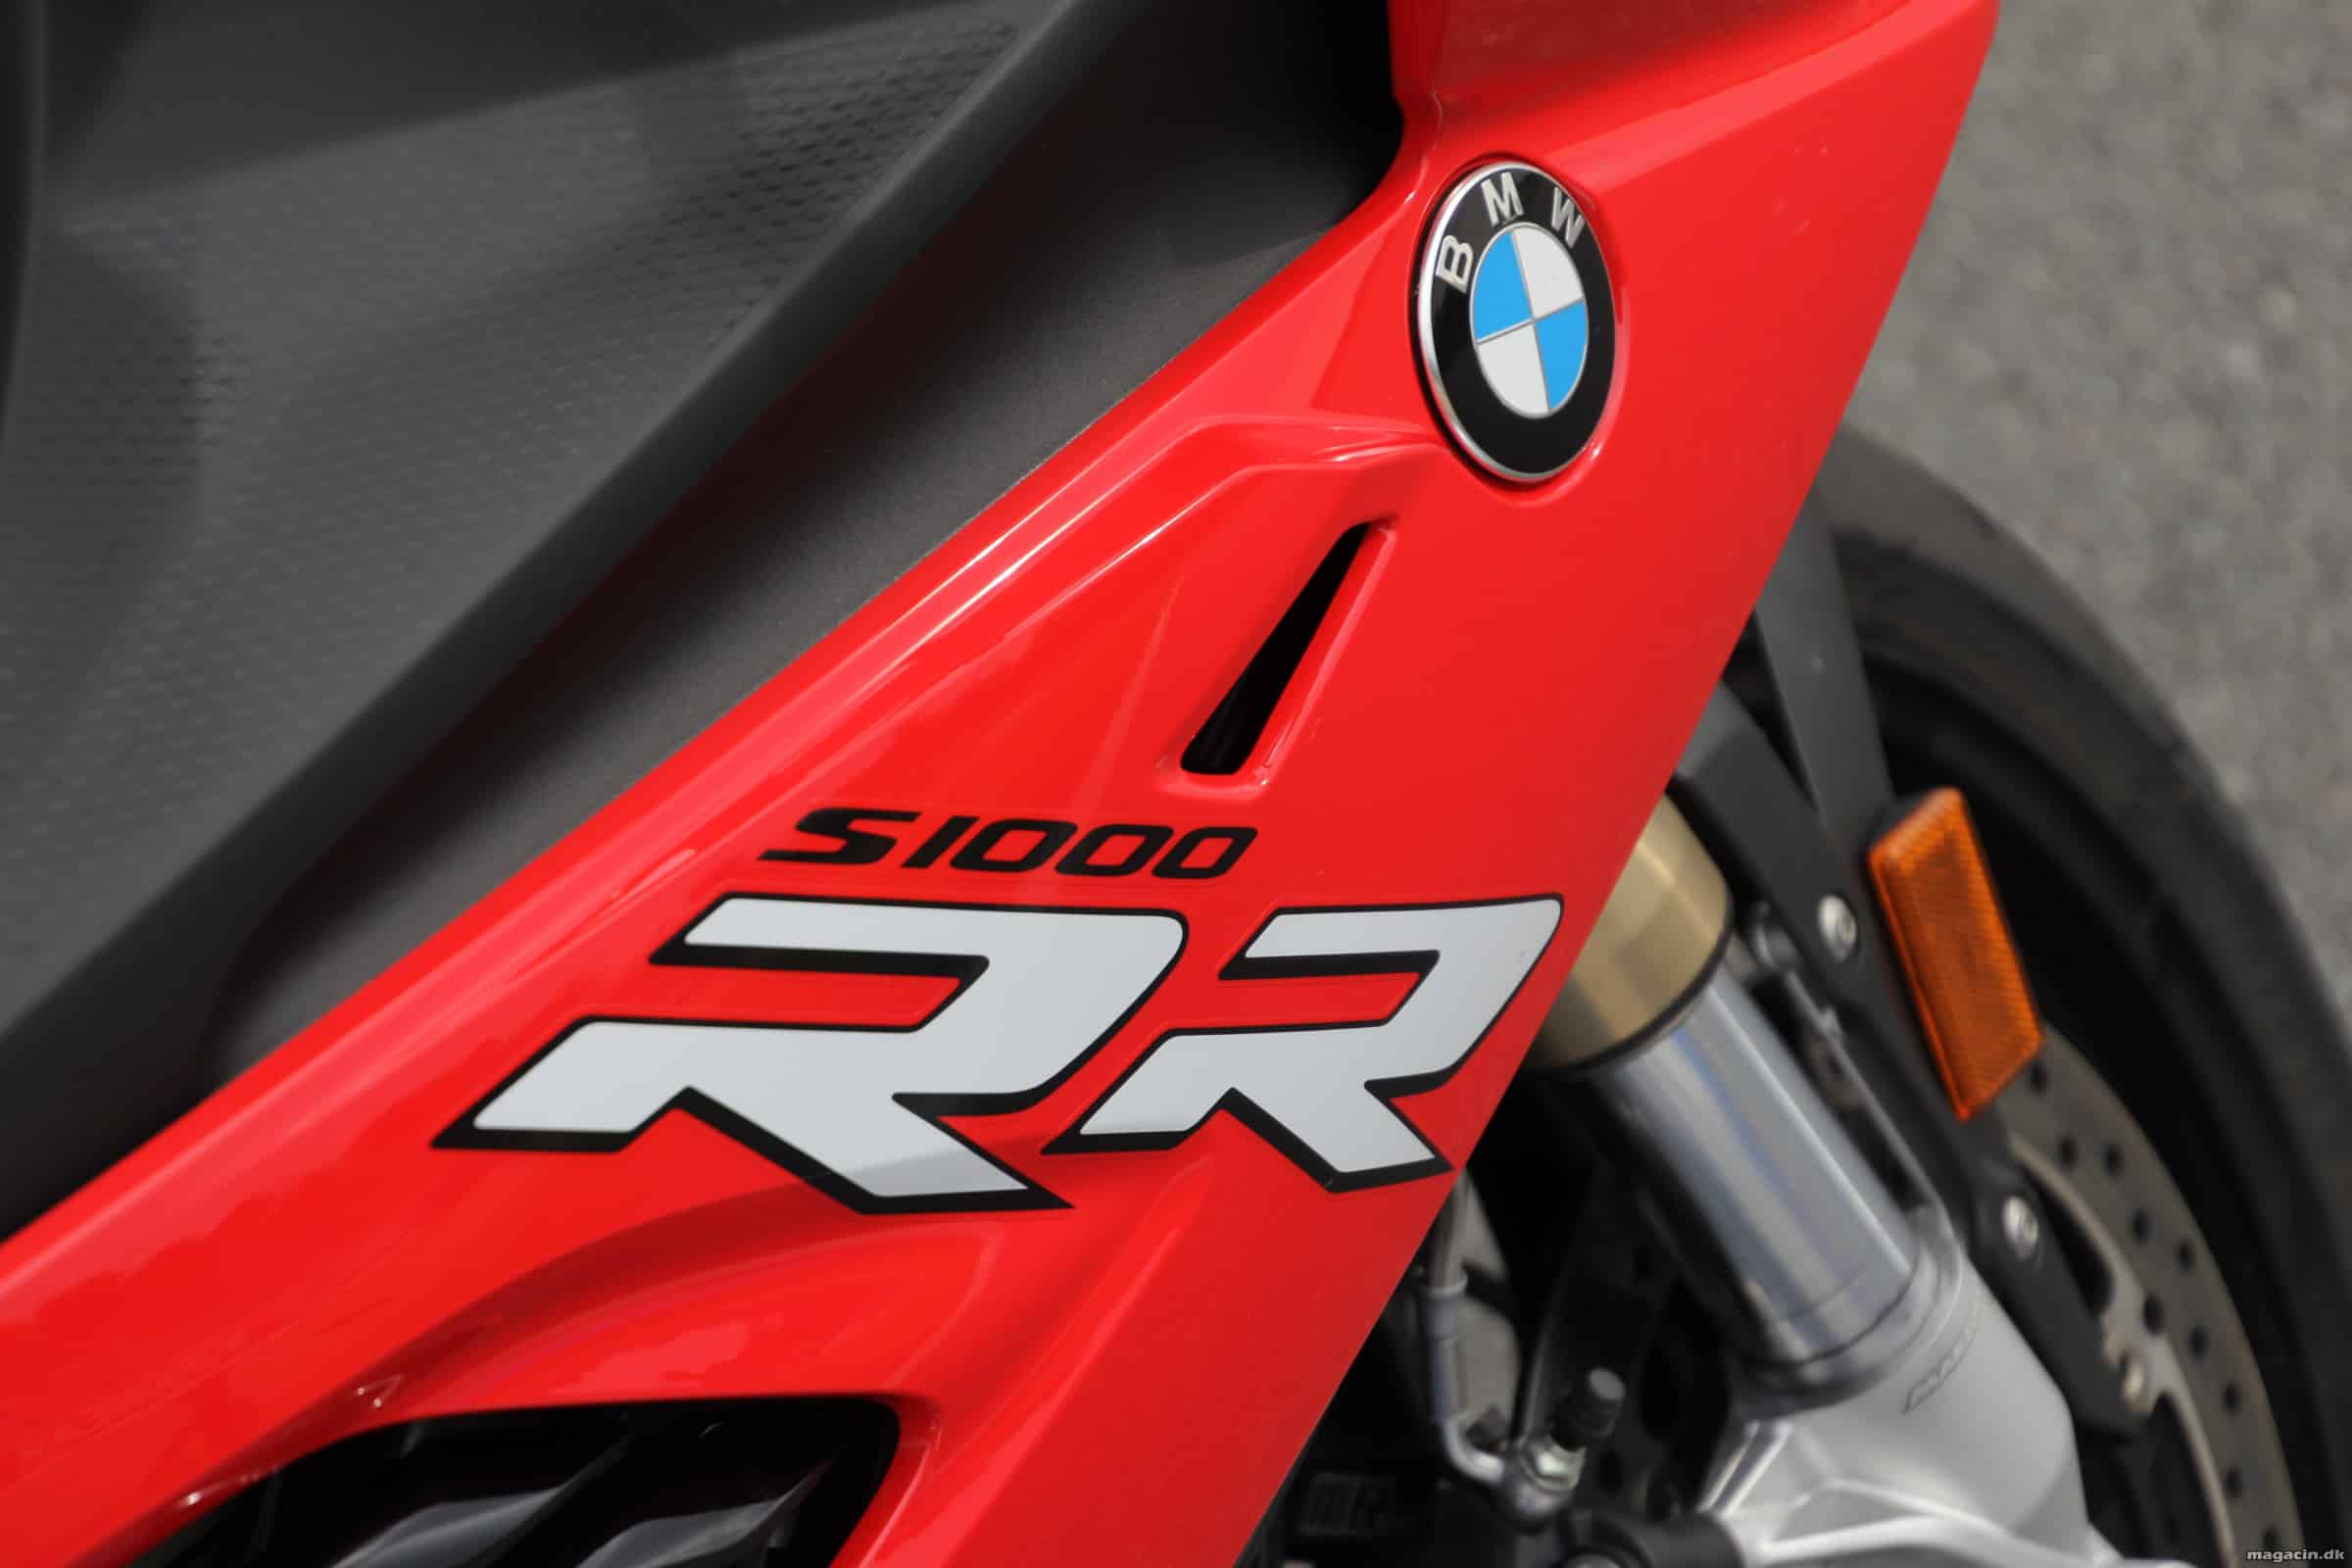 Test: 2019 BMW S1000RR – Pænere, skarpere og råstærk